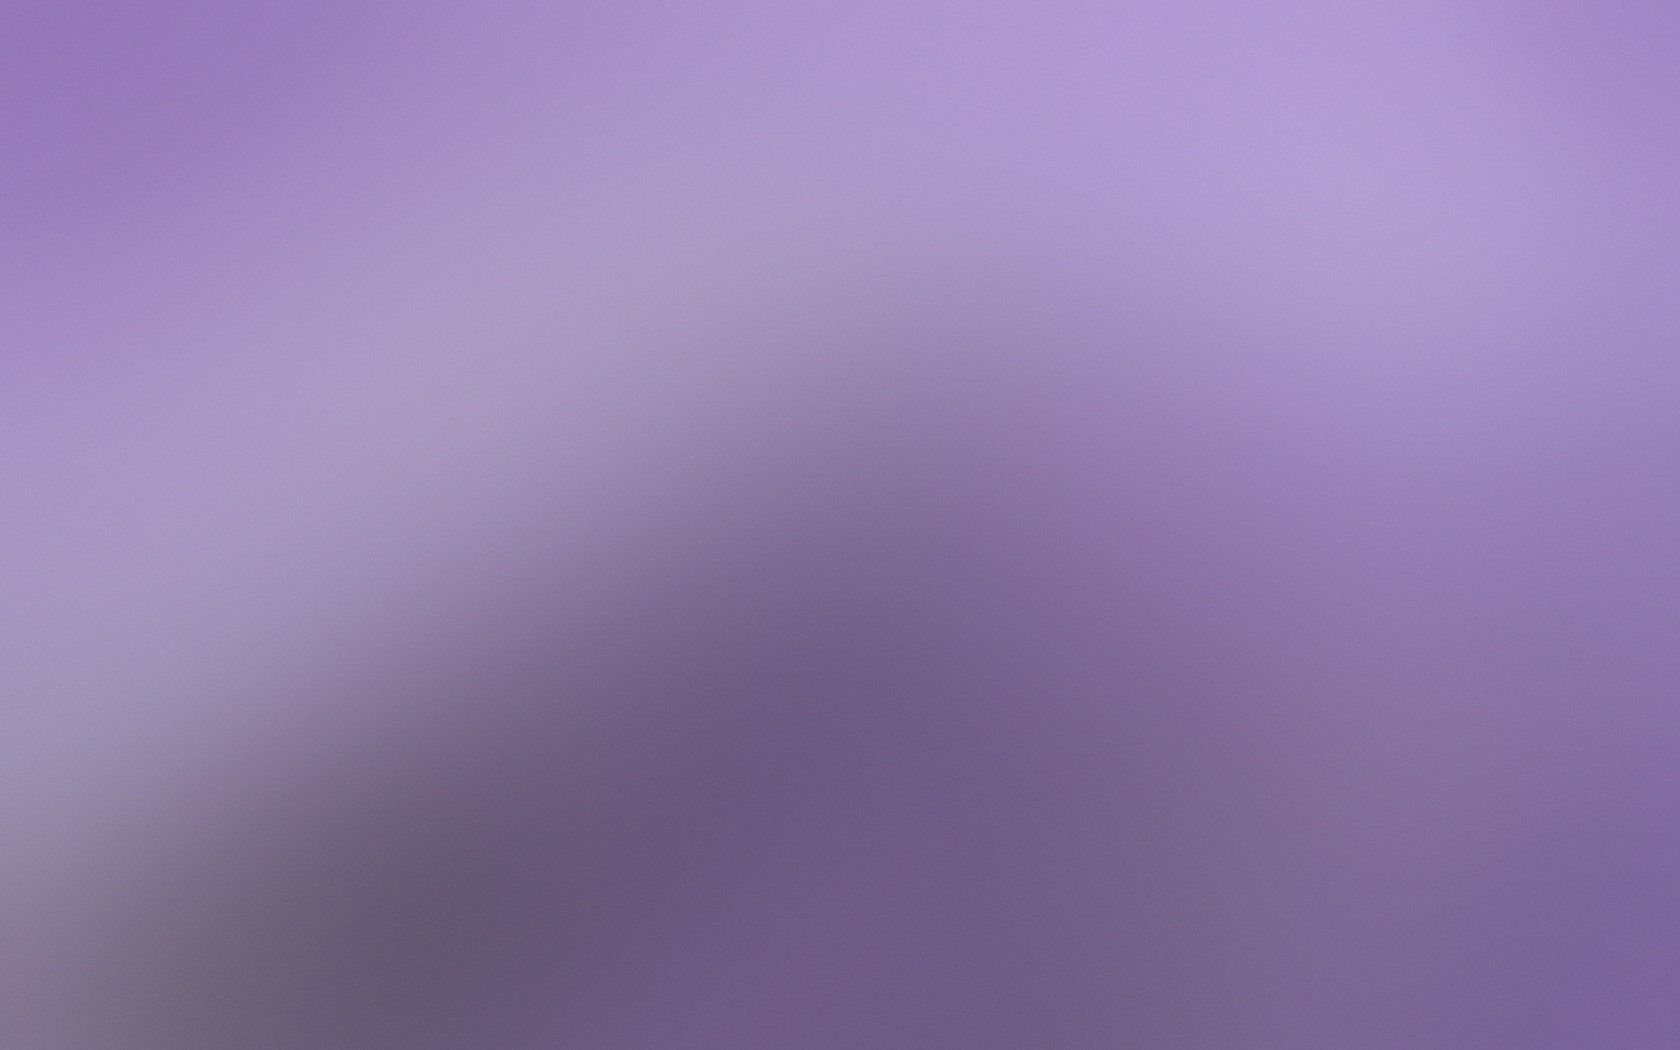 General 1680x1050 gradient blurred minimalism texture